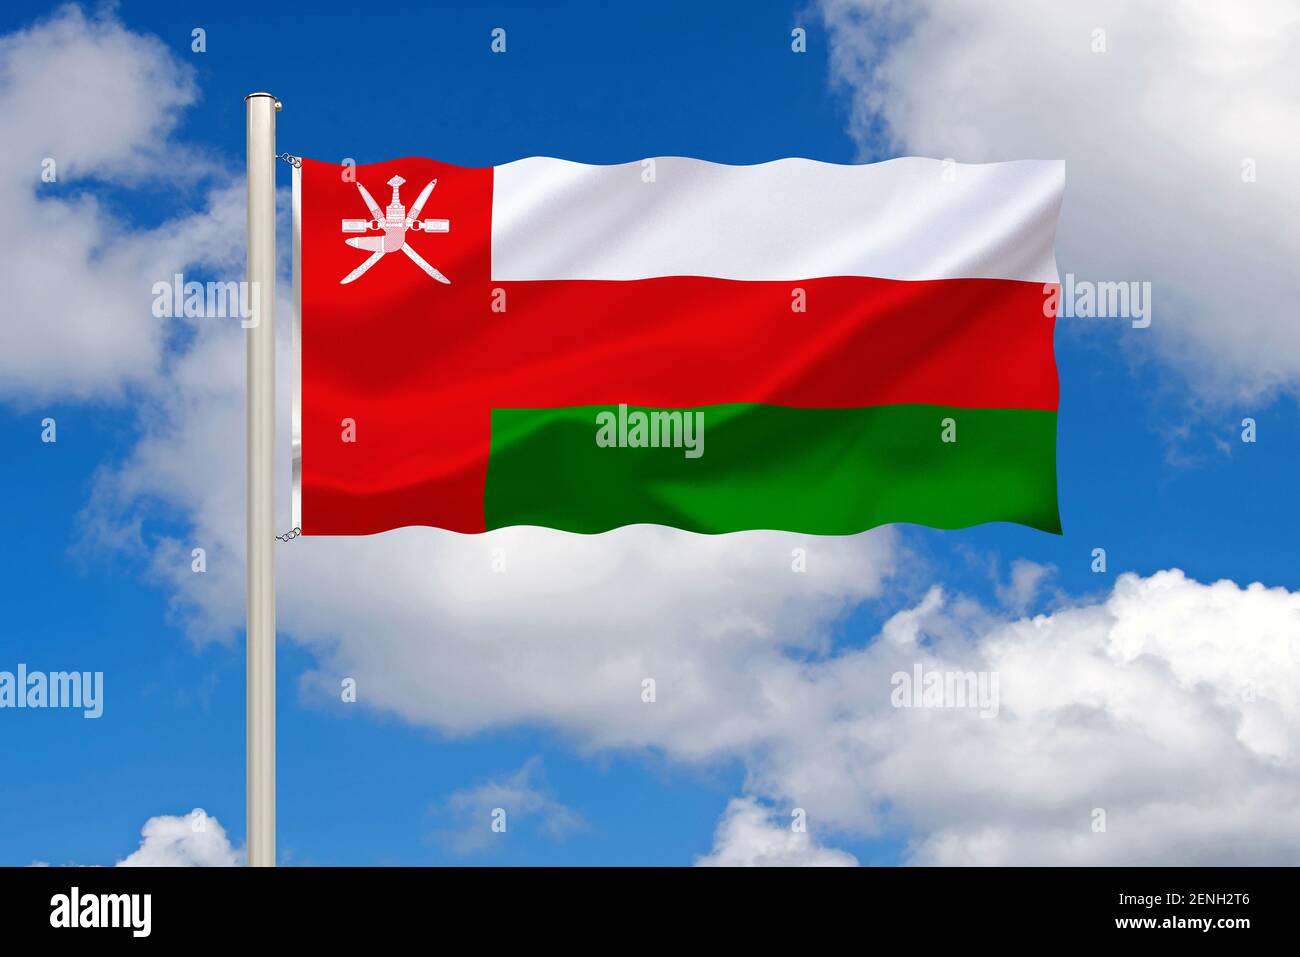 Die Flagge von Oman, Land im Mittleren Osten, Hautstadt ist Maskat, liegt am Persischen Golf, Stock Photo